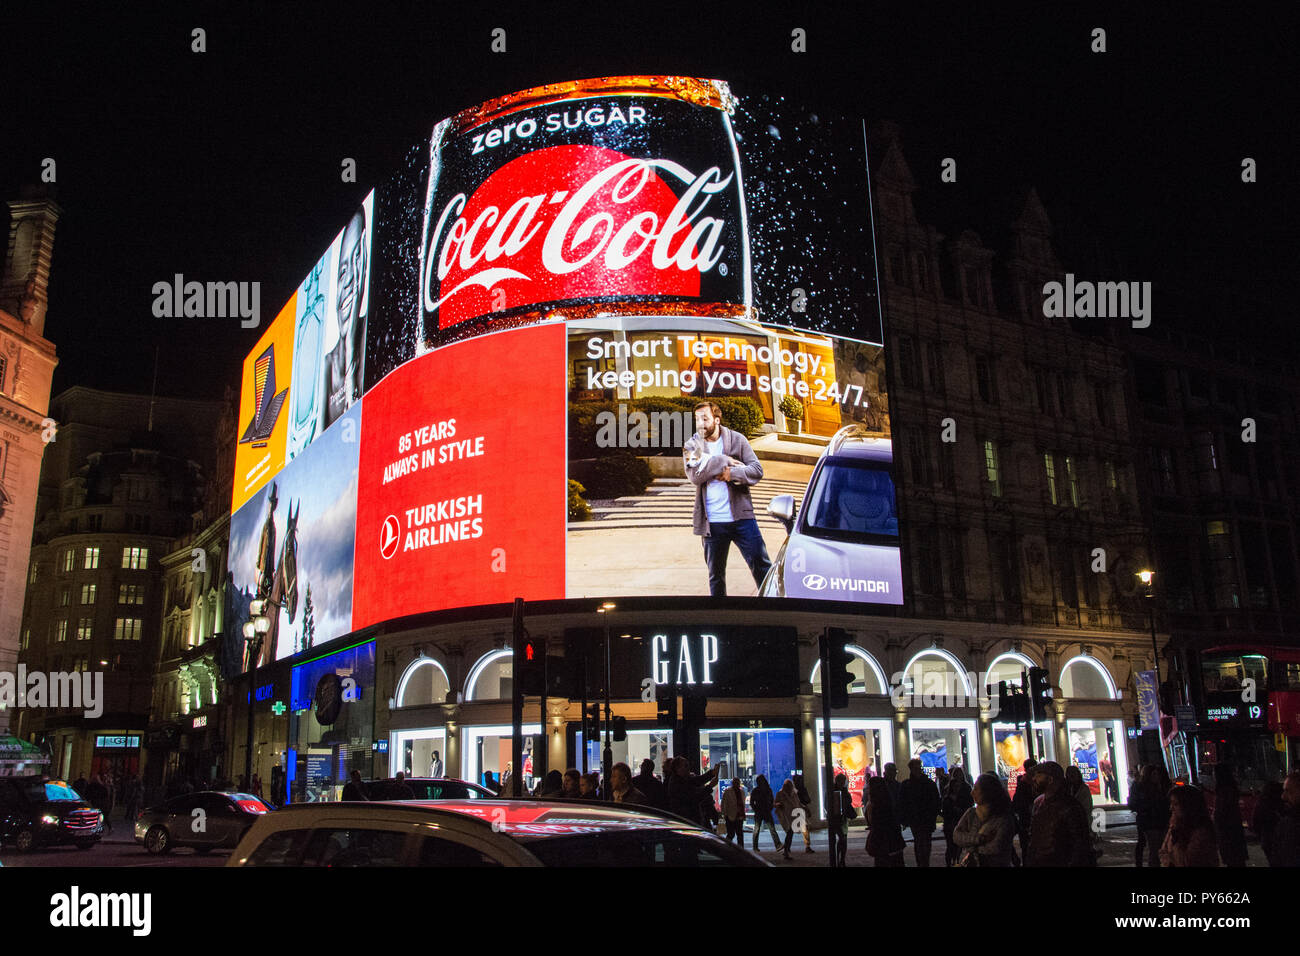 Lumières de Piccadilly - Landsec est énorme nouvelle LED écran numérique sur Piccadilly Circus, Londres, UK Banque D'Images